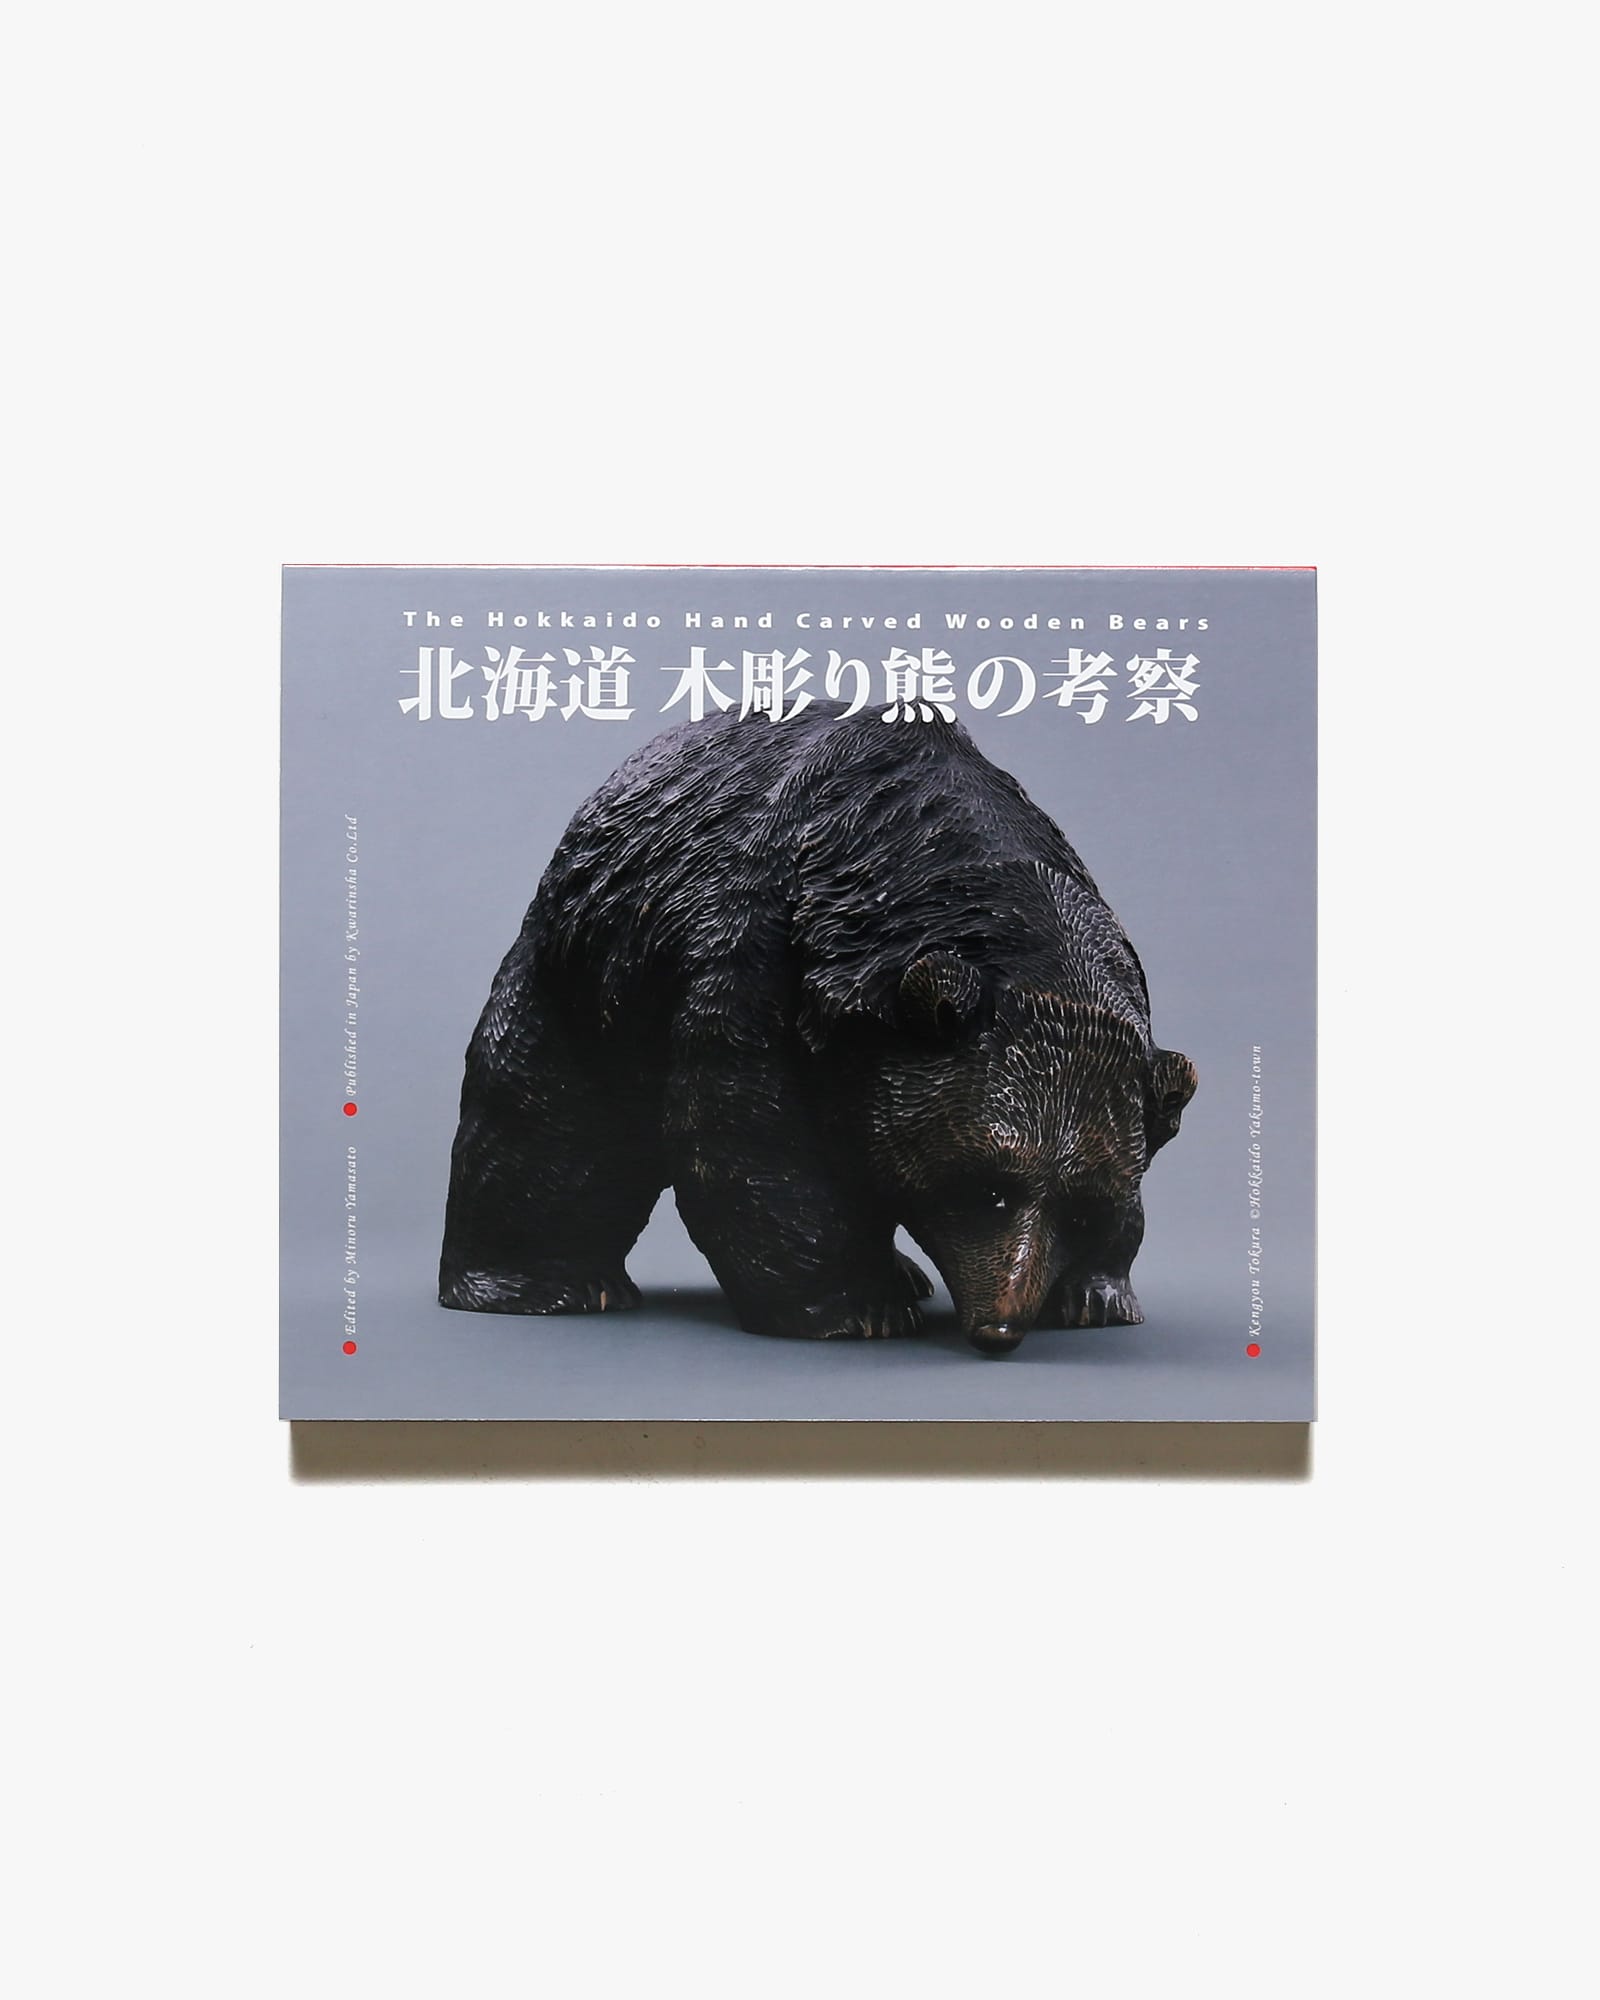 競売 北海道 木彫り熊の考察 カーサブルータス 2冊 趣味/スポーツ/実用 